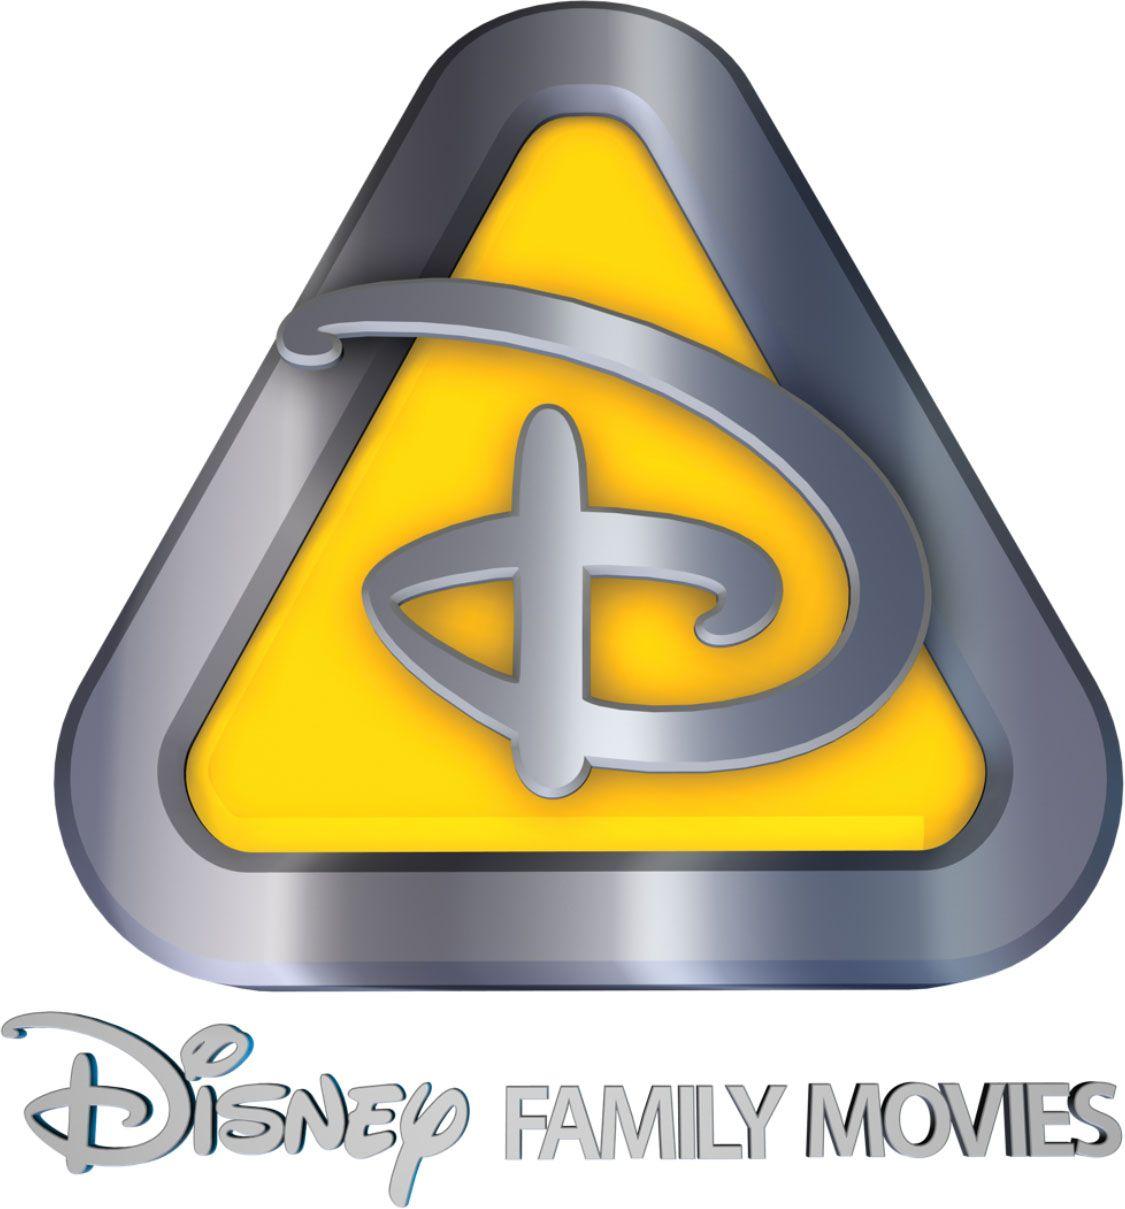 Disney Family Logo - Disney Family Movies | Disney Wiki | FANDOM powered by Wikia